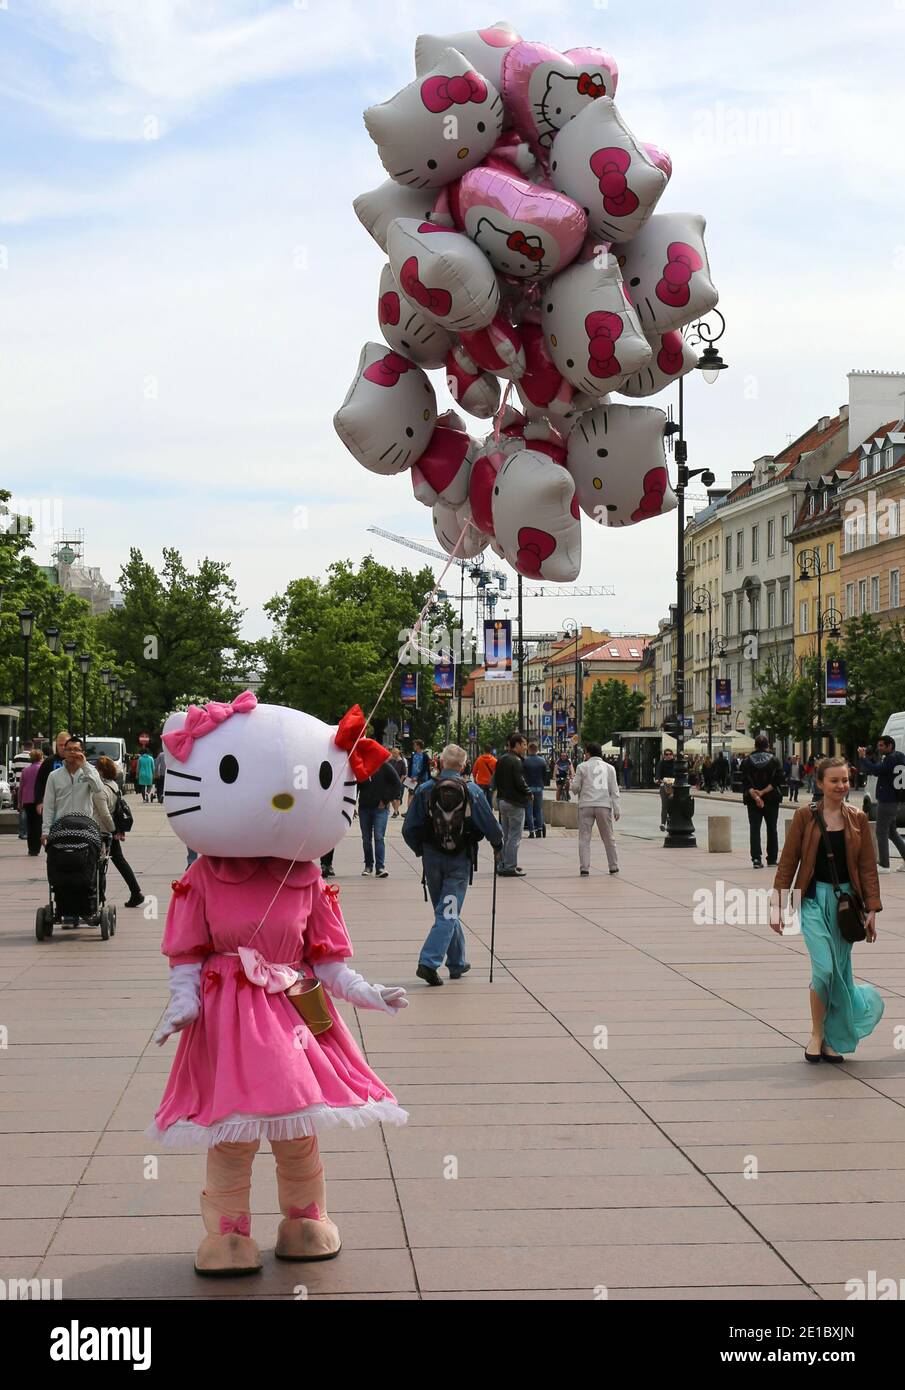 VARSAVIA, POLONIA-MAGGIO 16: Venditore di palloncini non identificato in Hello  Kitty Costume che vende palloncini.Maggio 16,2015 a Varsavia, Polonia Foto  stock - Alamy